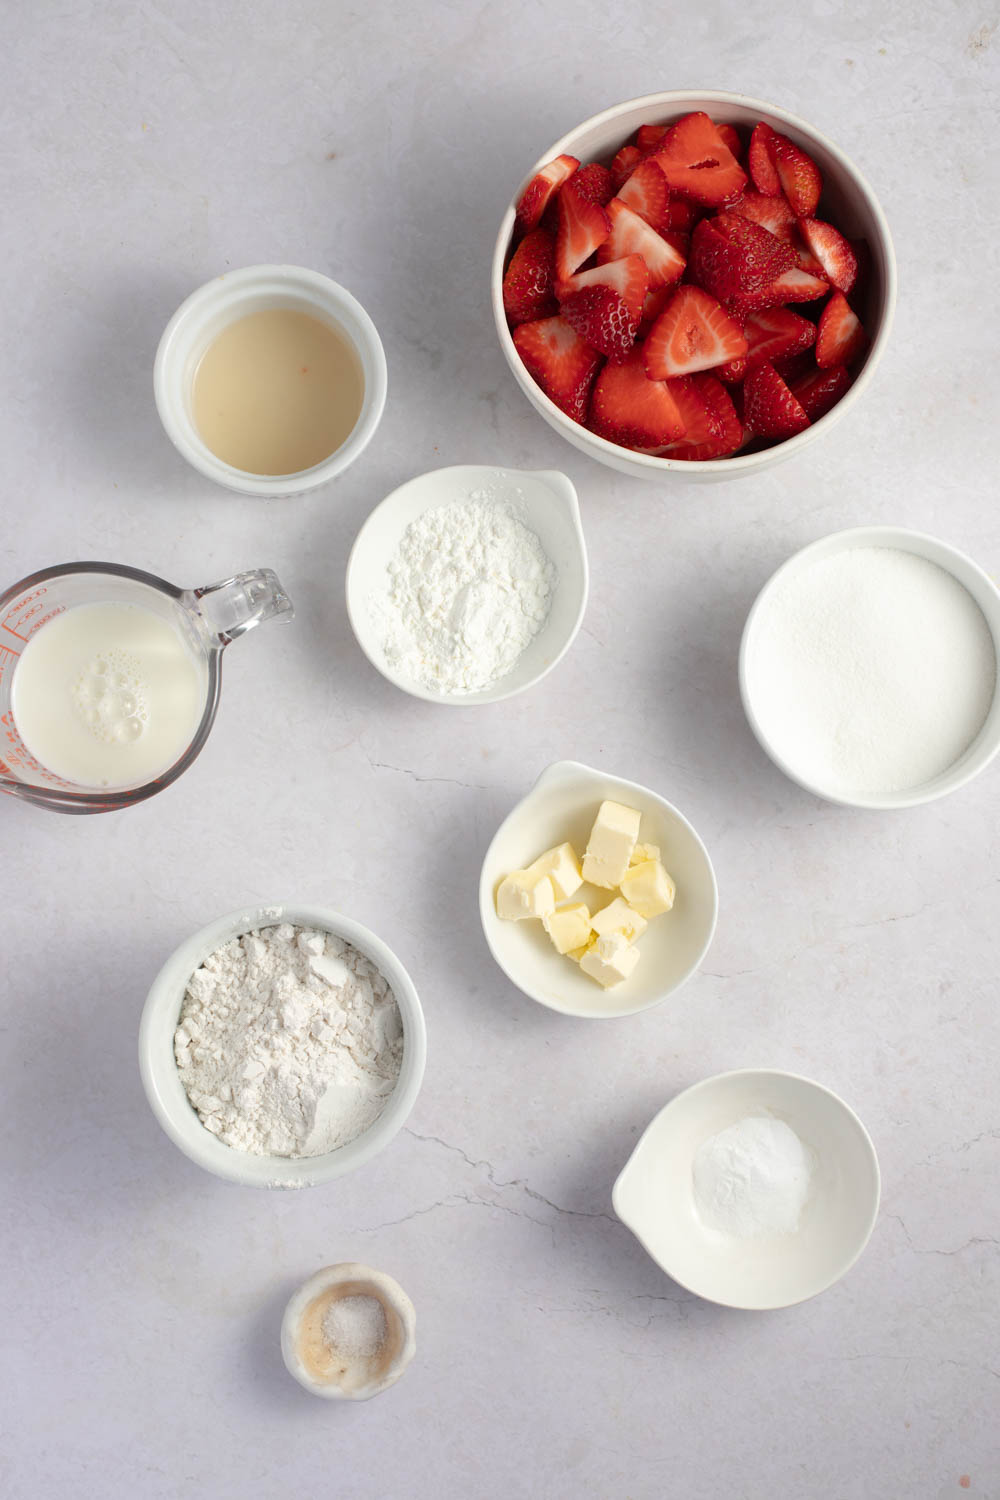 Strawberry Cobbler Ingredients - Sugar, Cornstarch, Lemon Juice, Strawberries, Butter, Flour, Baking Powder, Salt and Milk